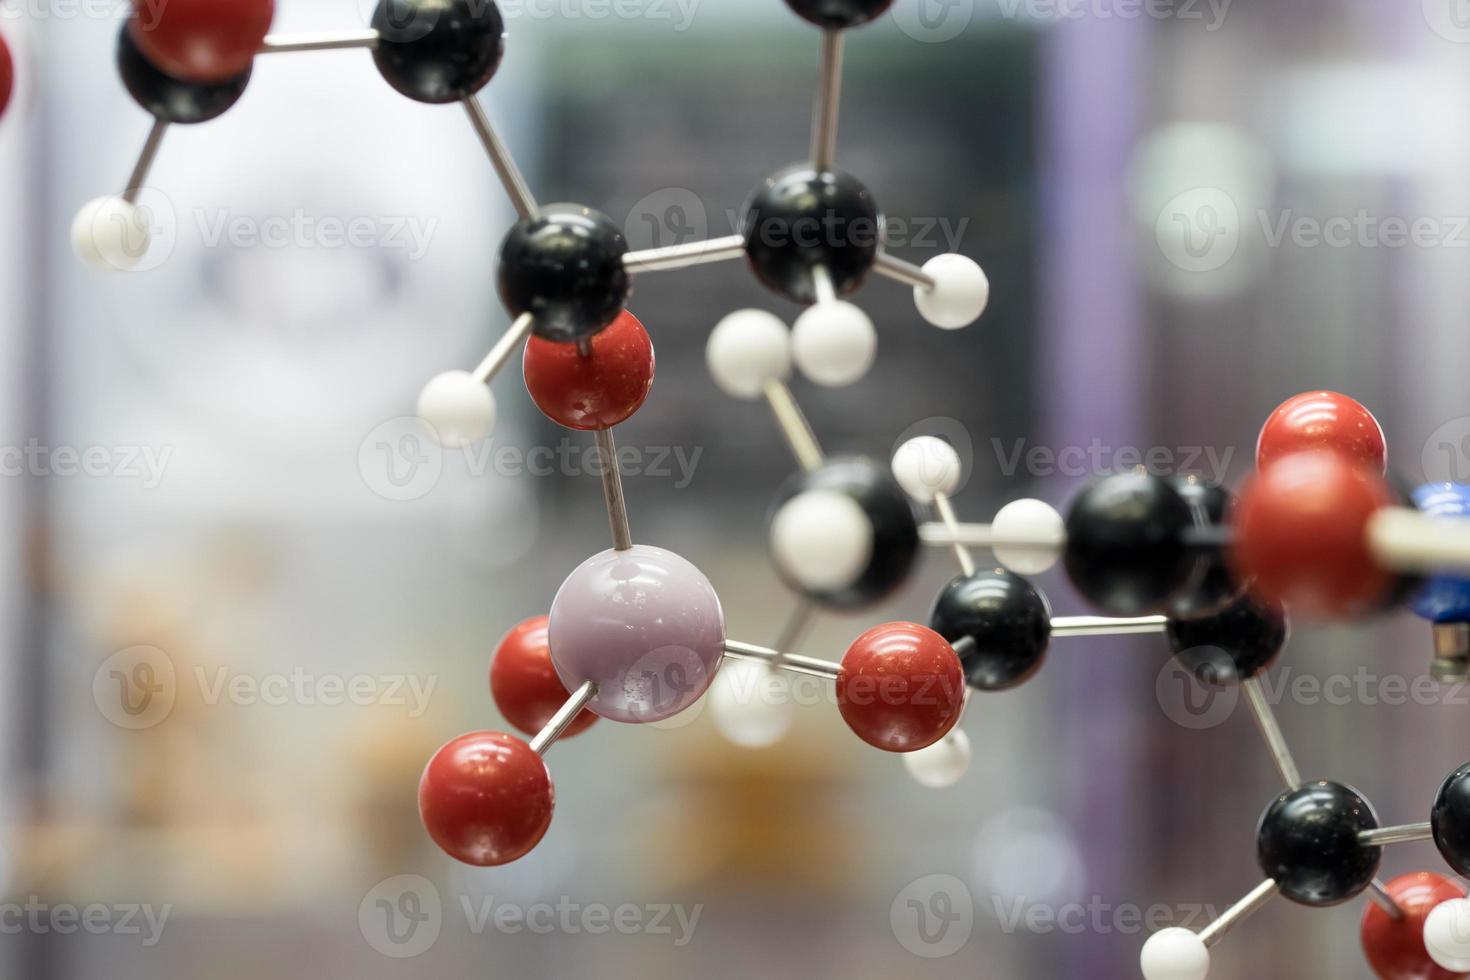 moleculair, dna en atoommodel in wetenschappelijk onderzoekslaboratorium foto